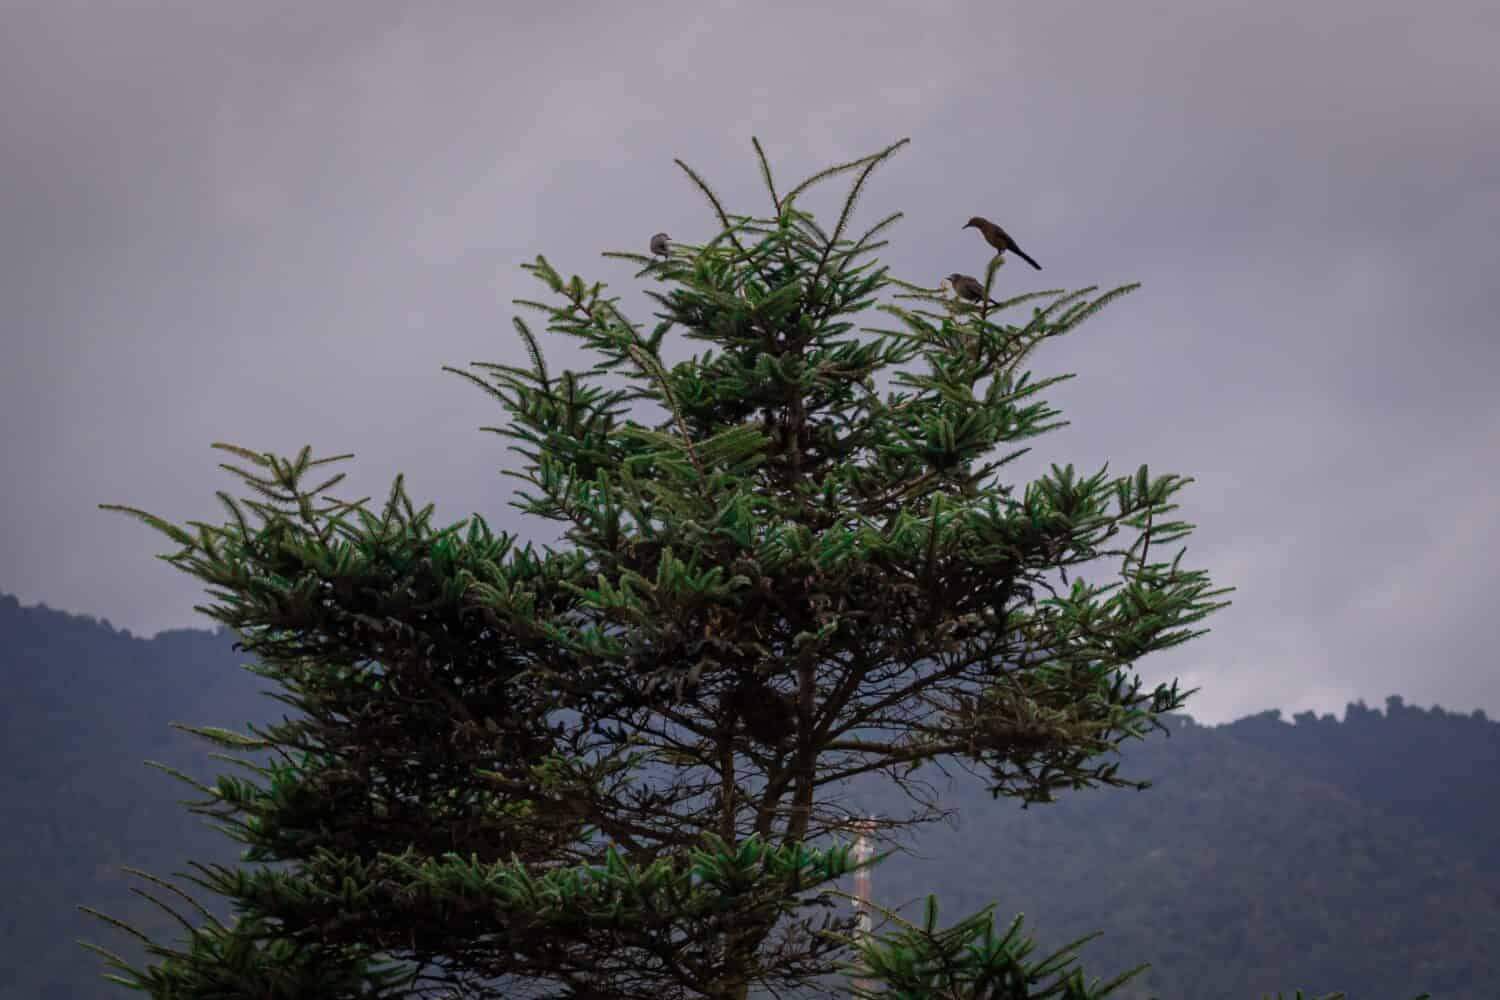 Pinabete in pericolo di estinzione in Guatemala, con uccelli sulla punta.